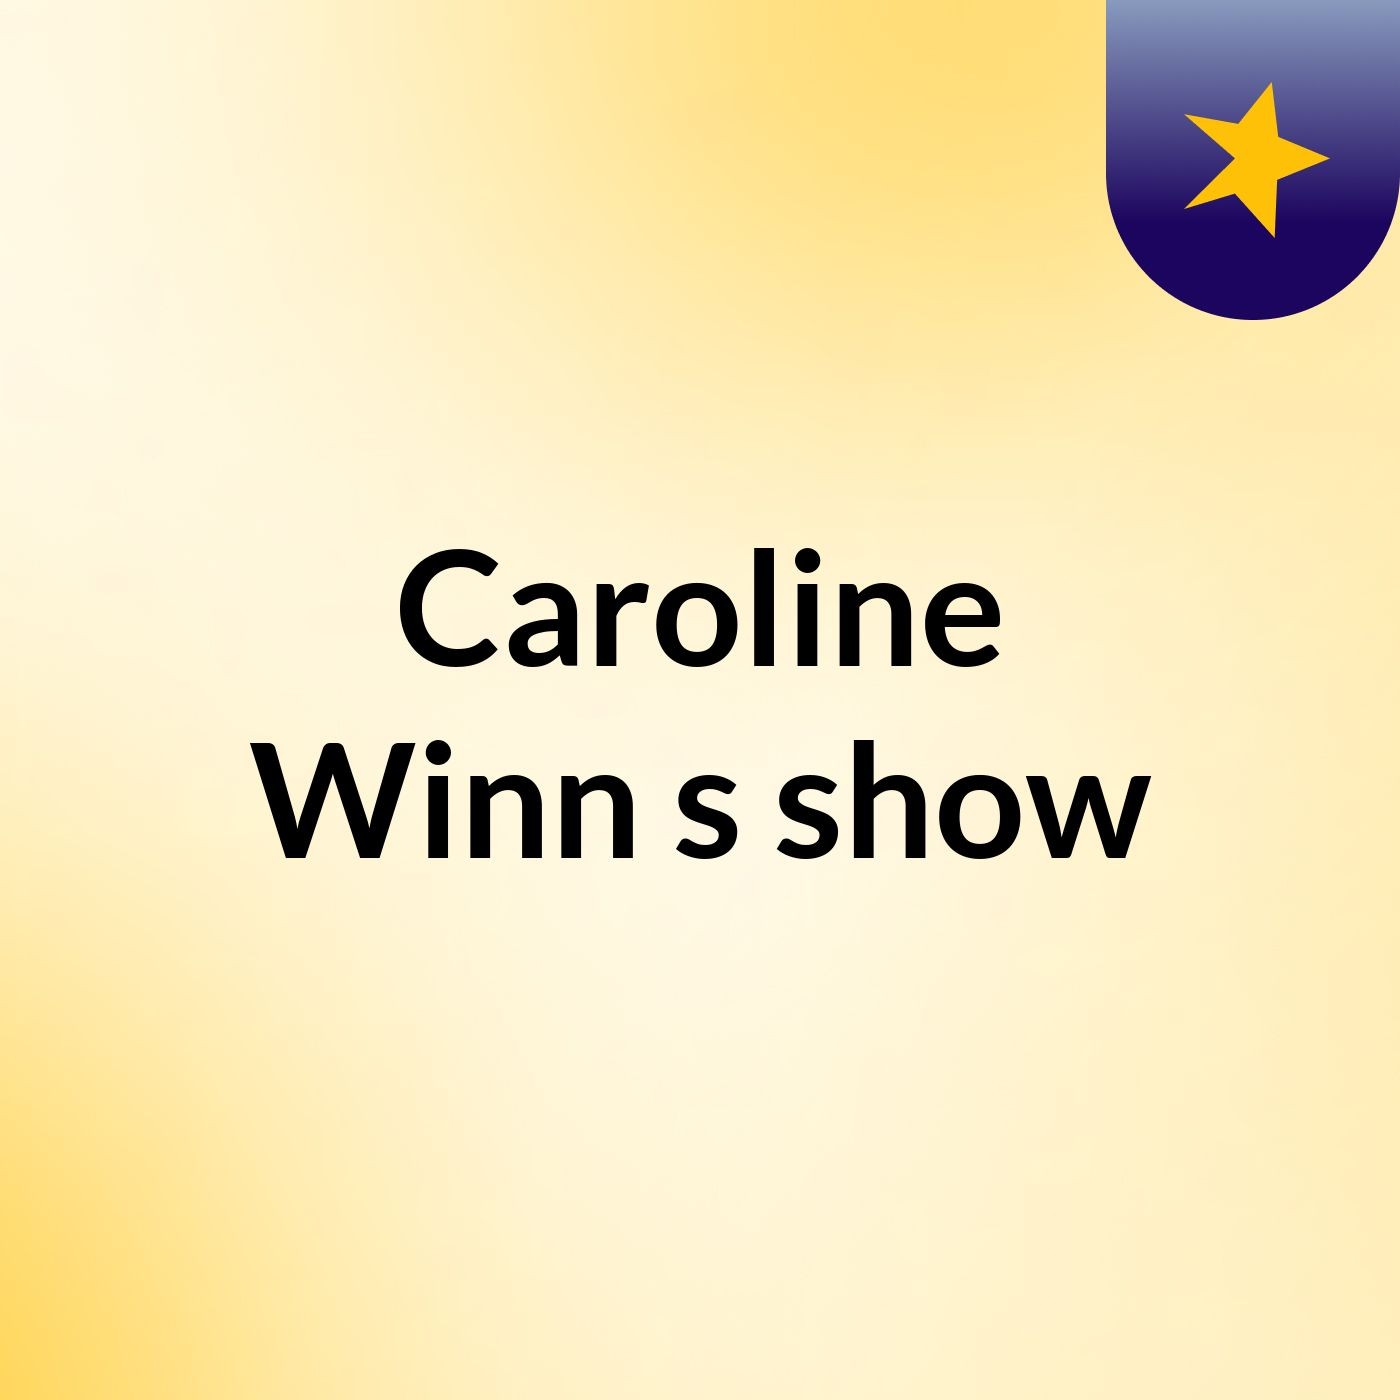 Caroline Winn's show